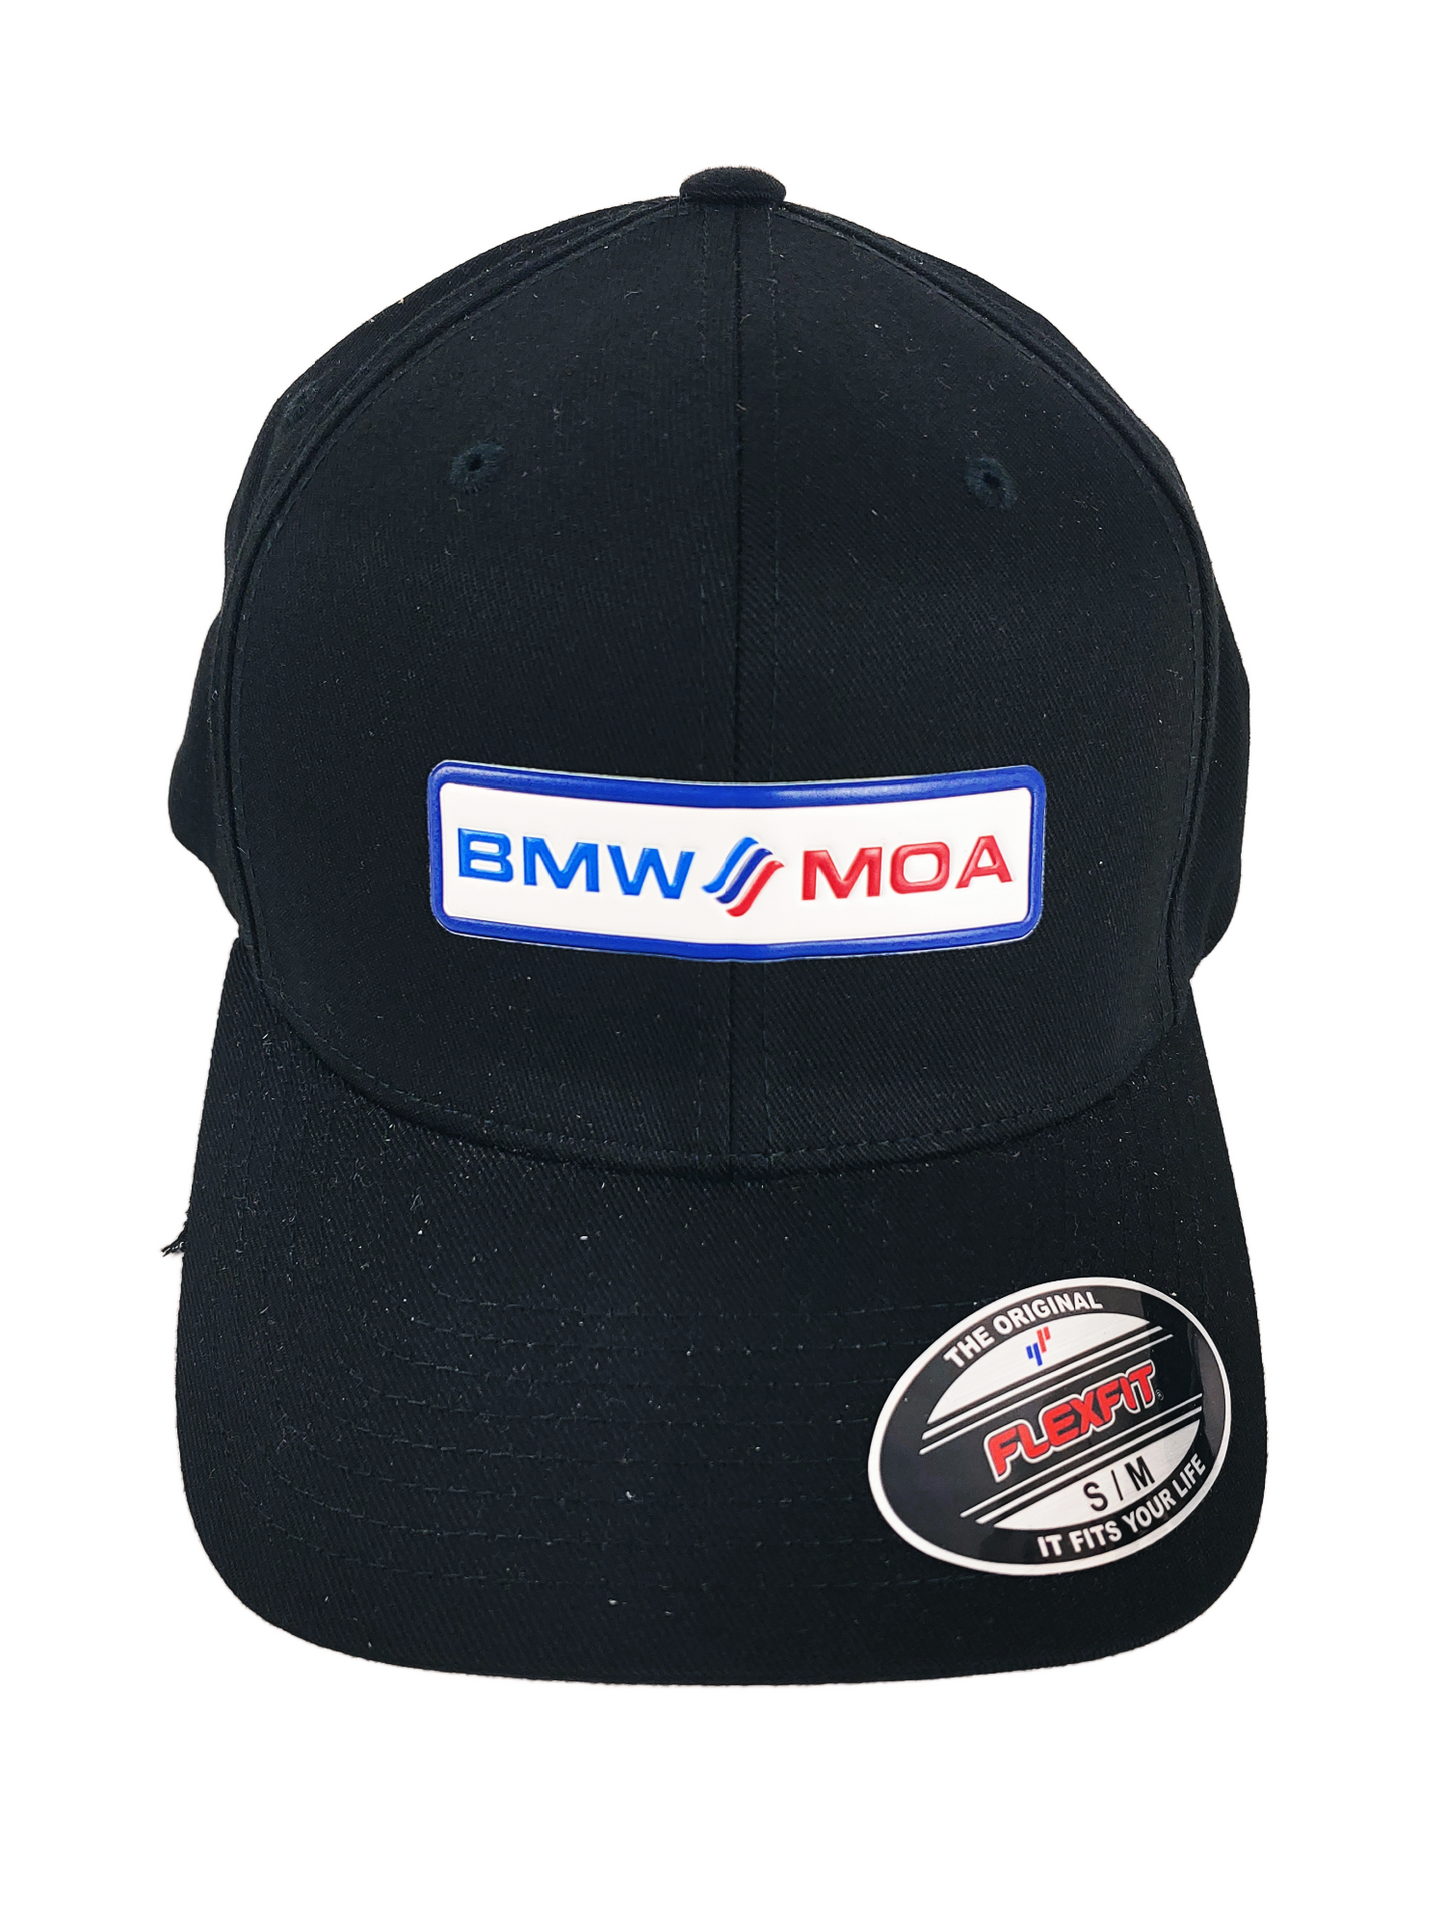 BMW-MOA - OG Patch - 2 Styles - Adjustable or Flex Fit